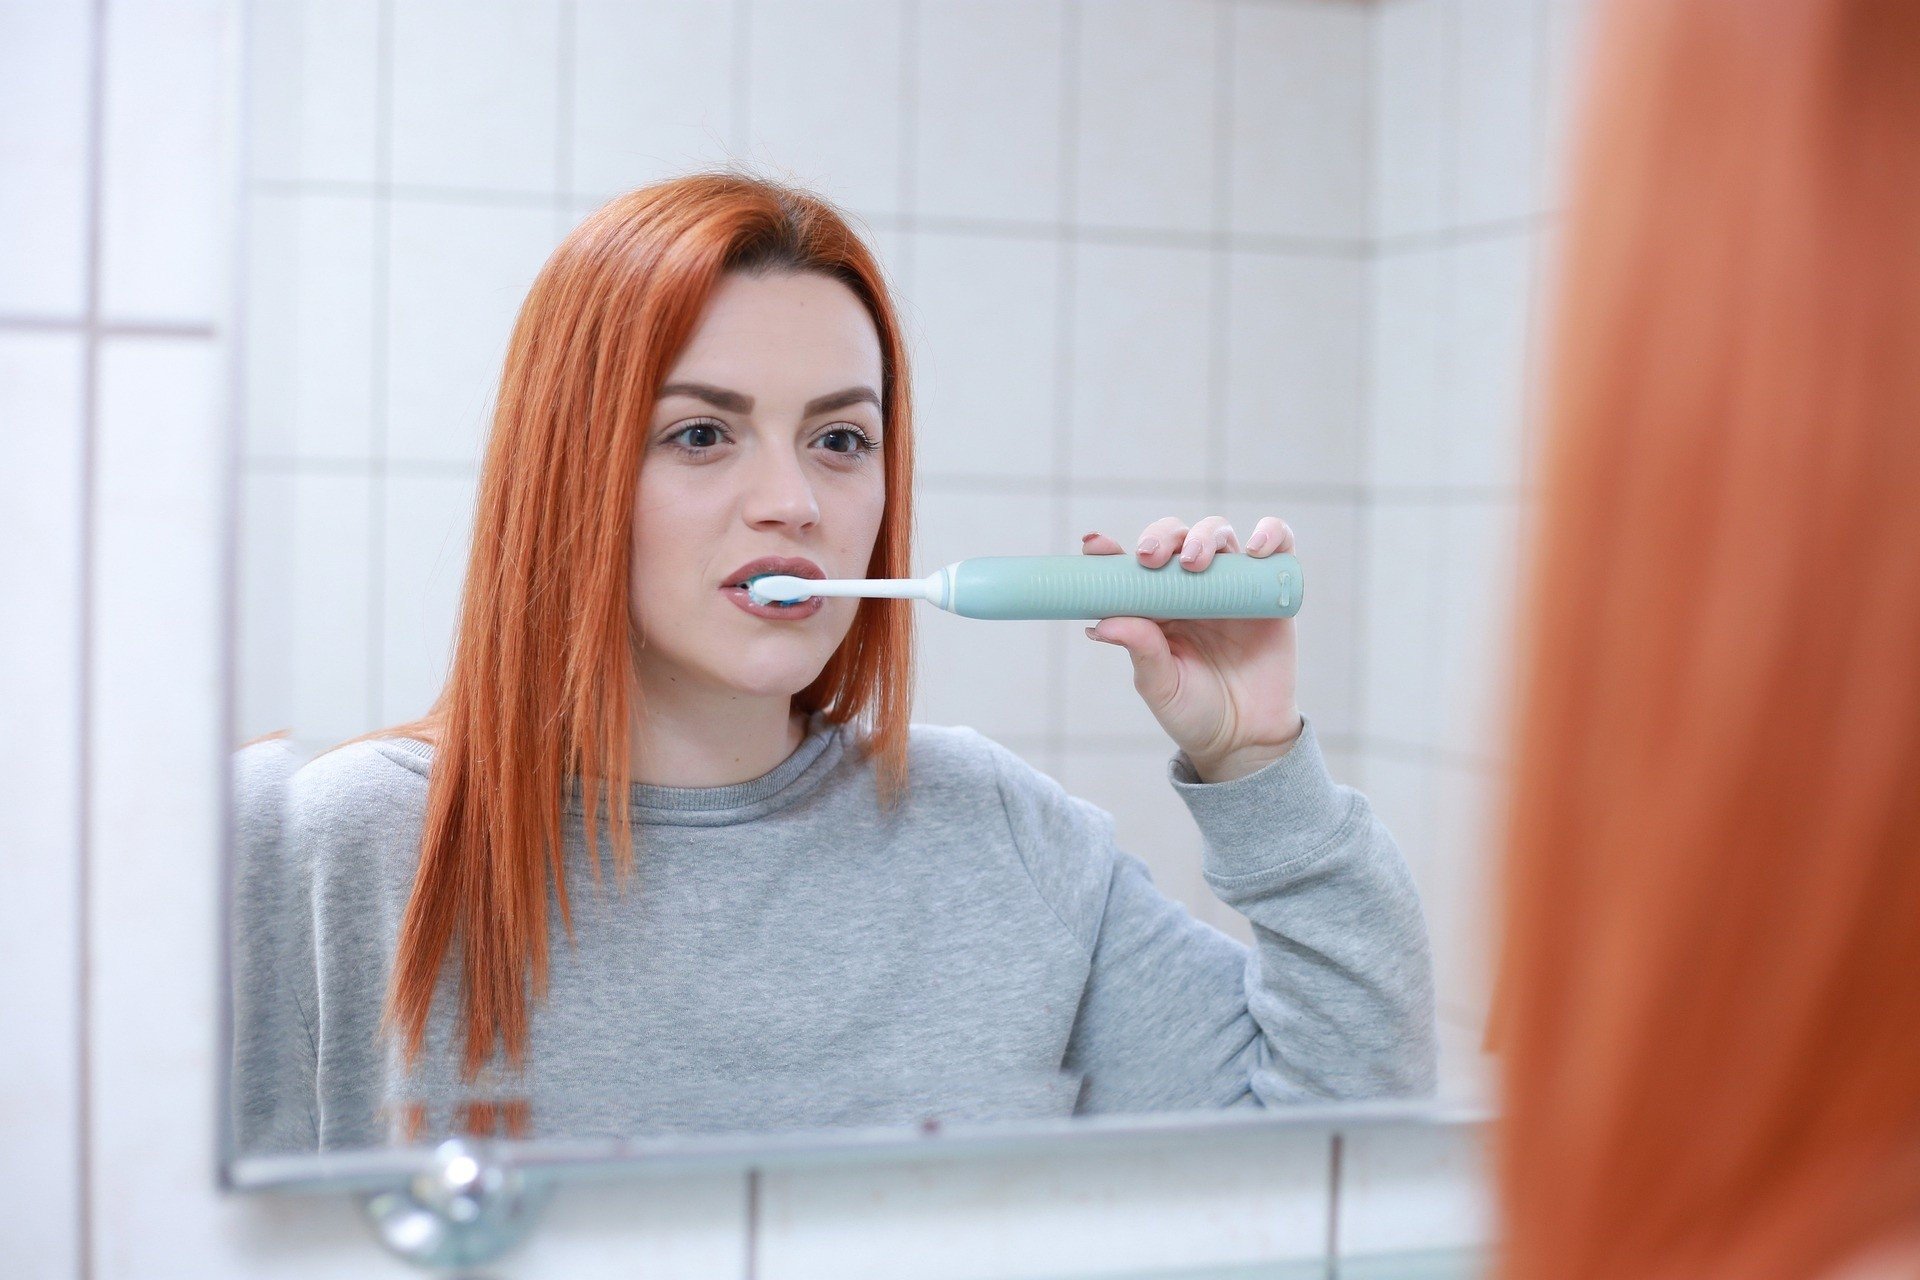 Szczoteczka soniczna do mycia zębów – jak działa, jak jej używać i czy  warto ją kupić? Co jest lepsze: szczoteczka soniczna czy elektryczna? |  Strona Zdrowia